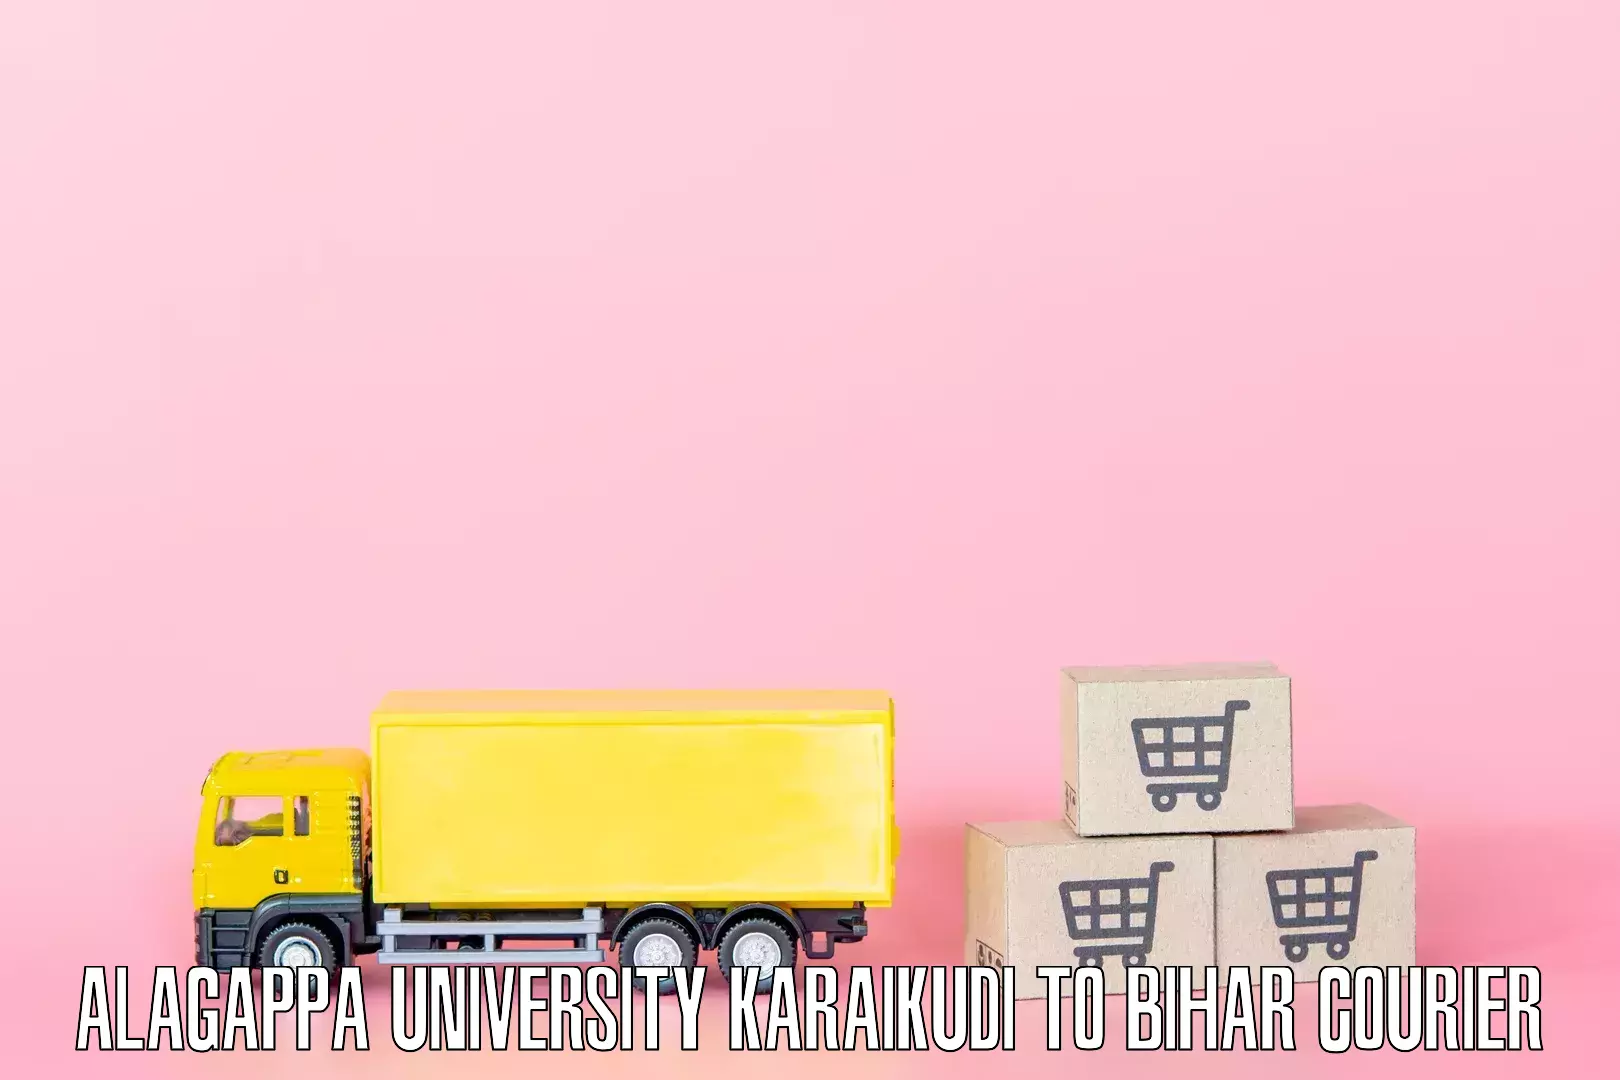 Furniture transport experts Alagappa University Karaikudi to Laheriasarai